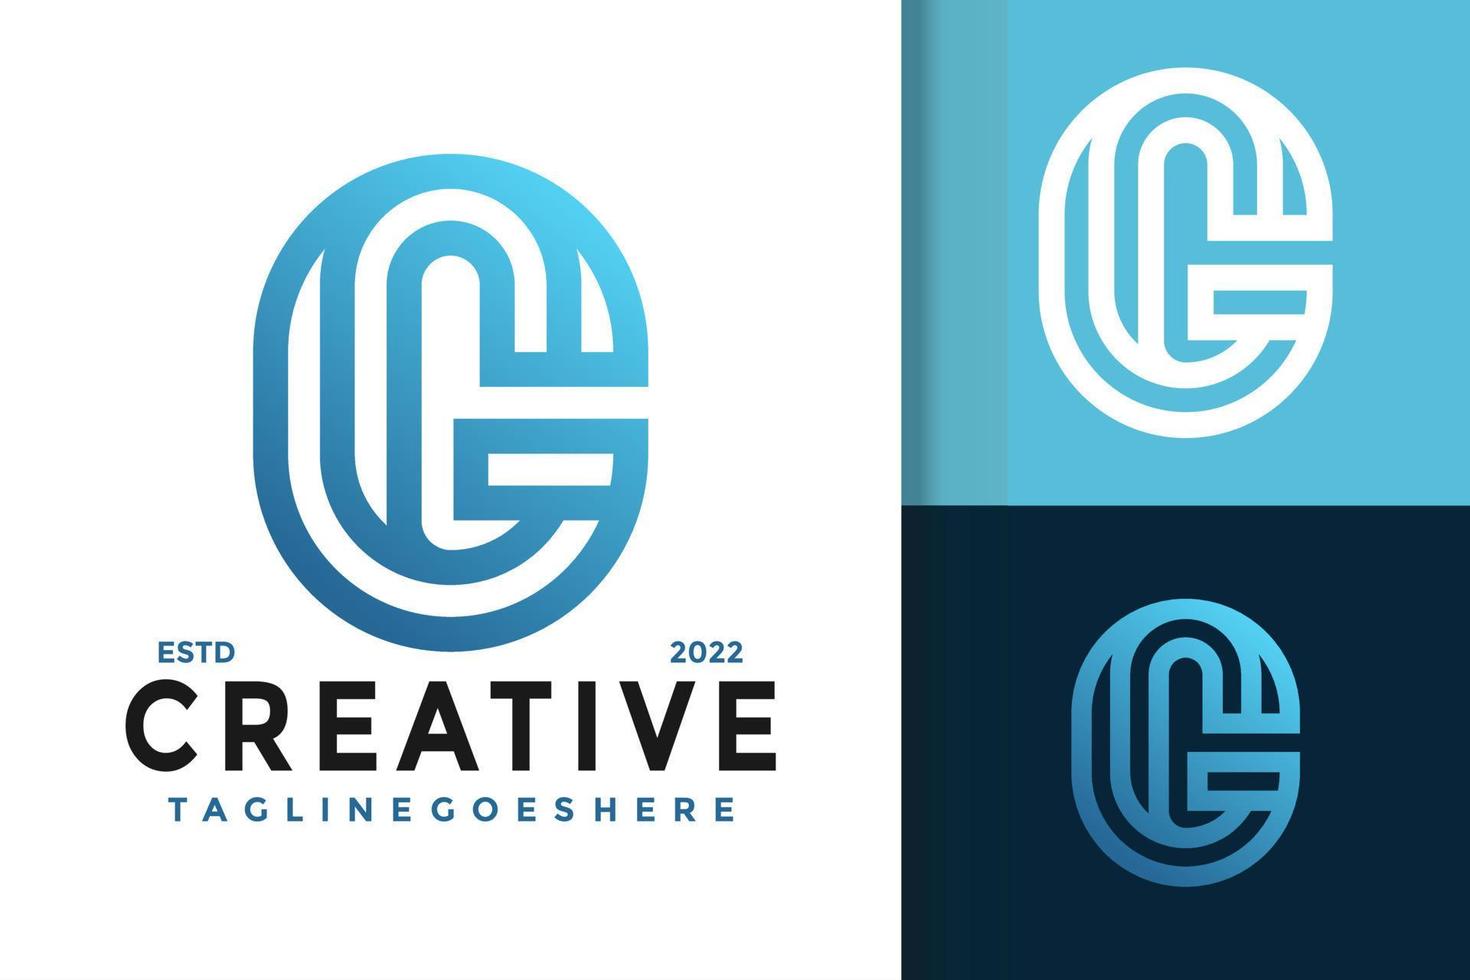 création de logo créatif lettre g, vecteur de logos d'identité de marque, logo moderne, modèle d'illustration vectorielle de dessins de logo